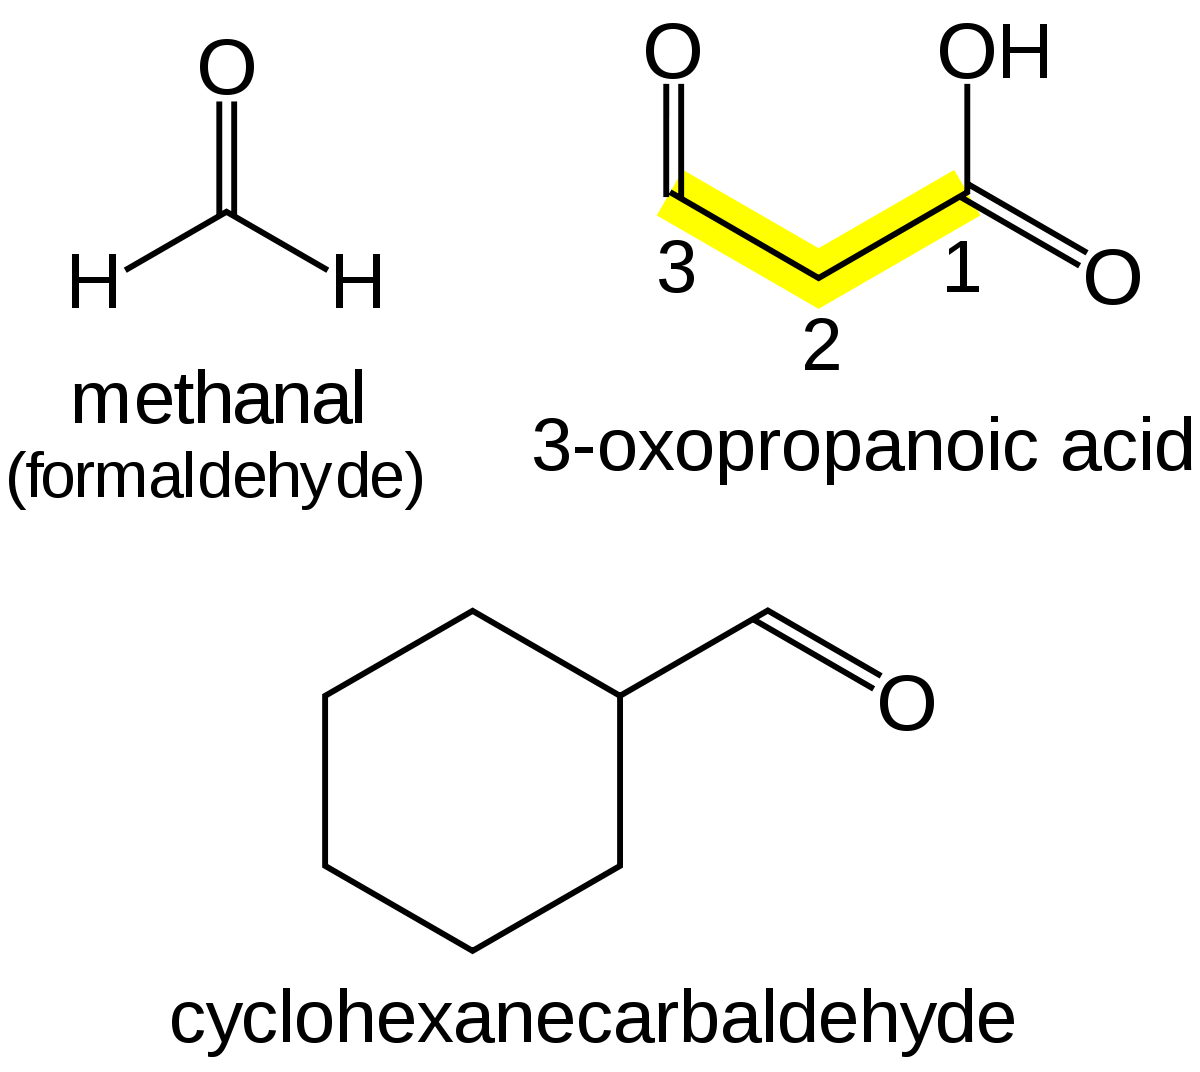 Метоксиэтан. Фенилацетальдегид. Метаналь и формальдегид. ИЮПАК. Метоксиэтан формула.